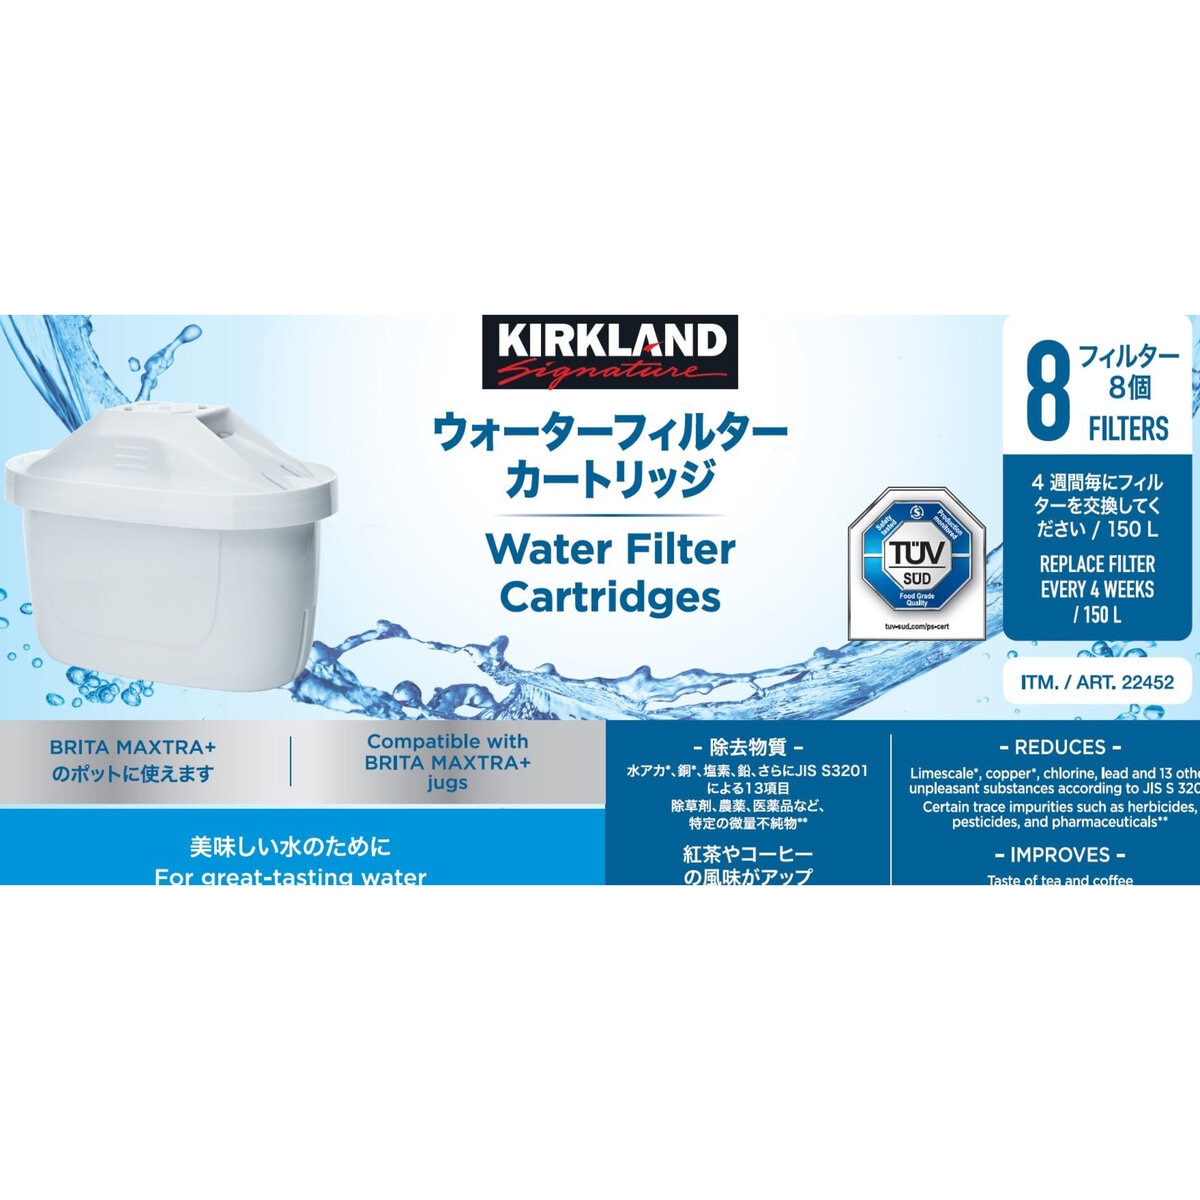 カークランドシグネチャー 浄水ポット用フィルター カートリッジ 8個入り Costco Japan